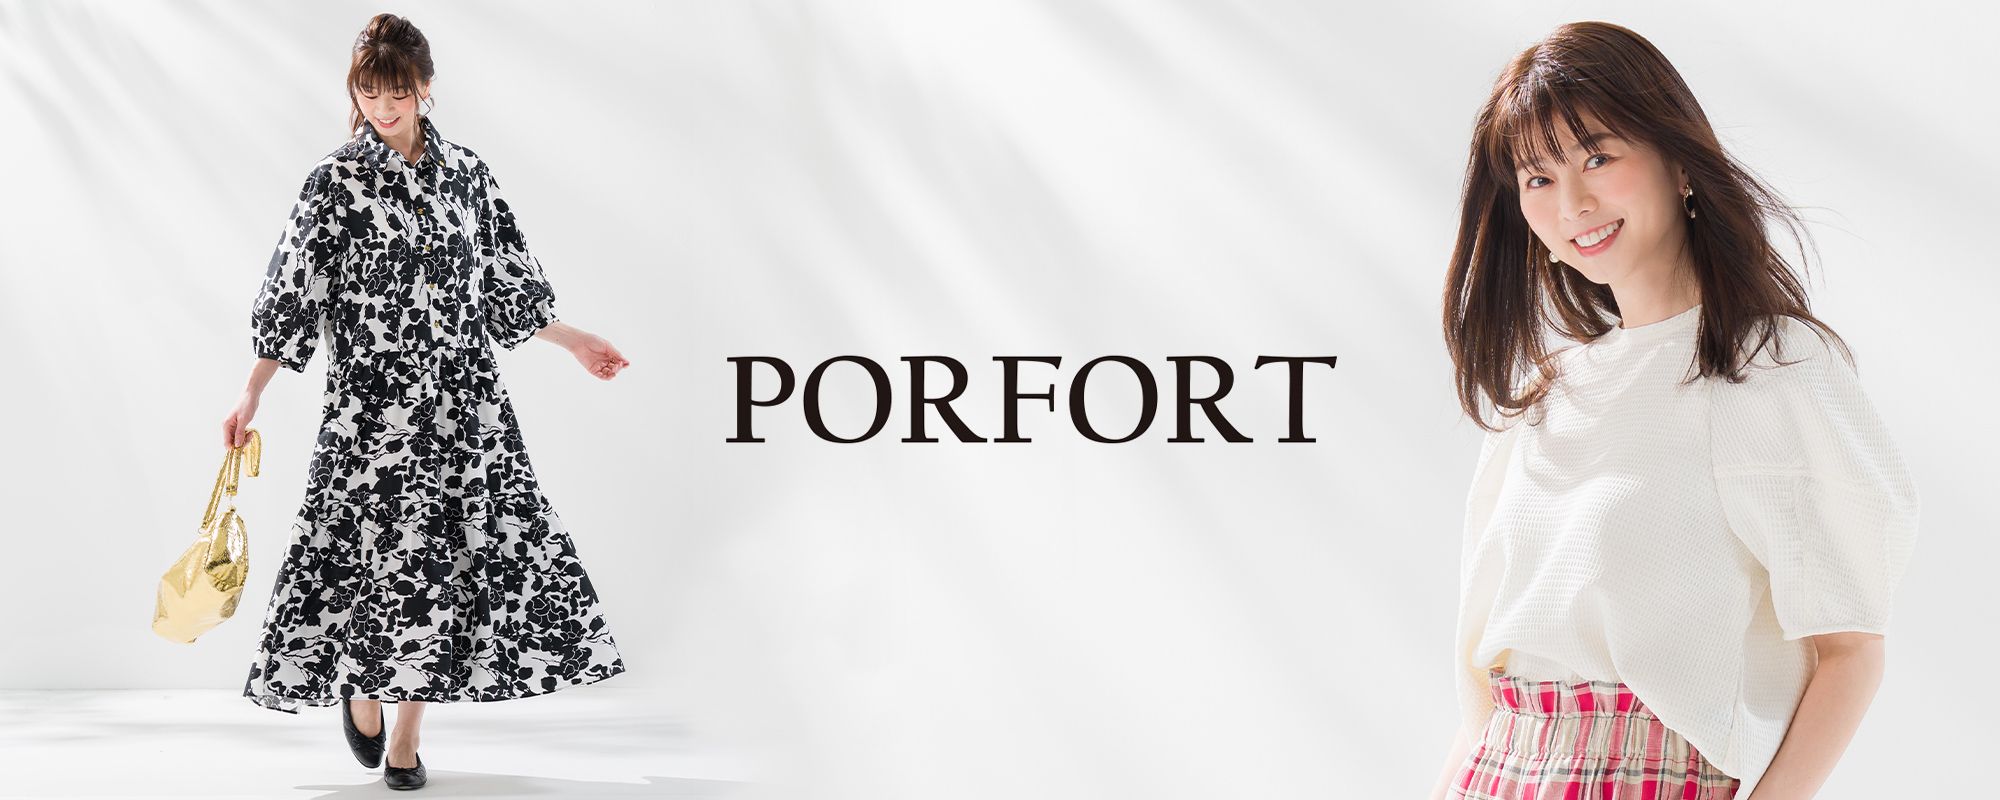 porfort